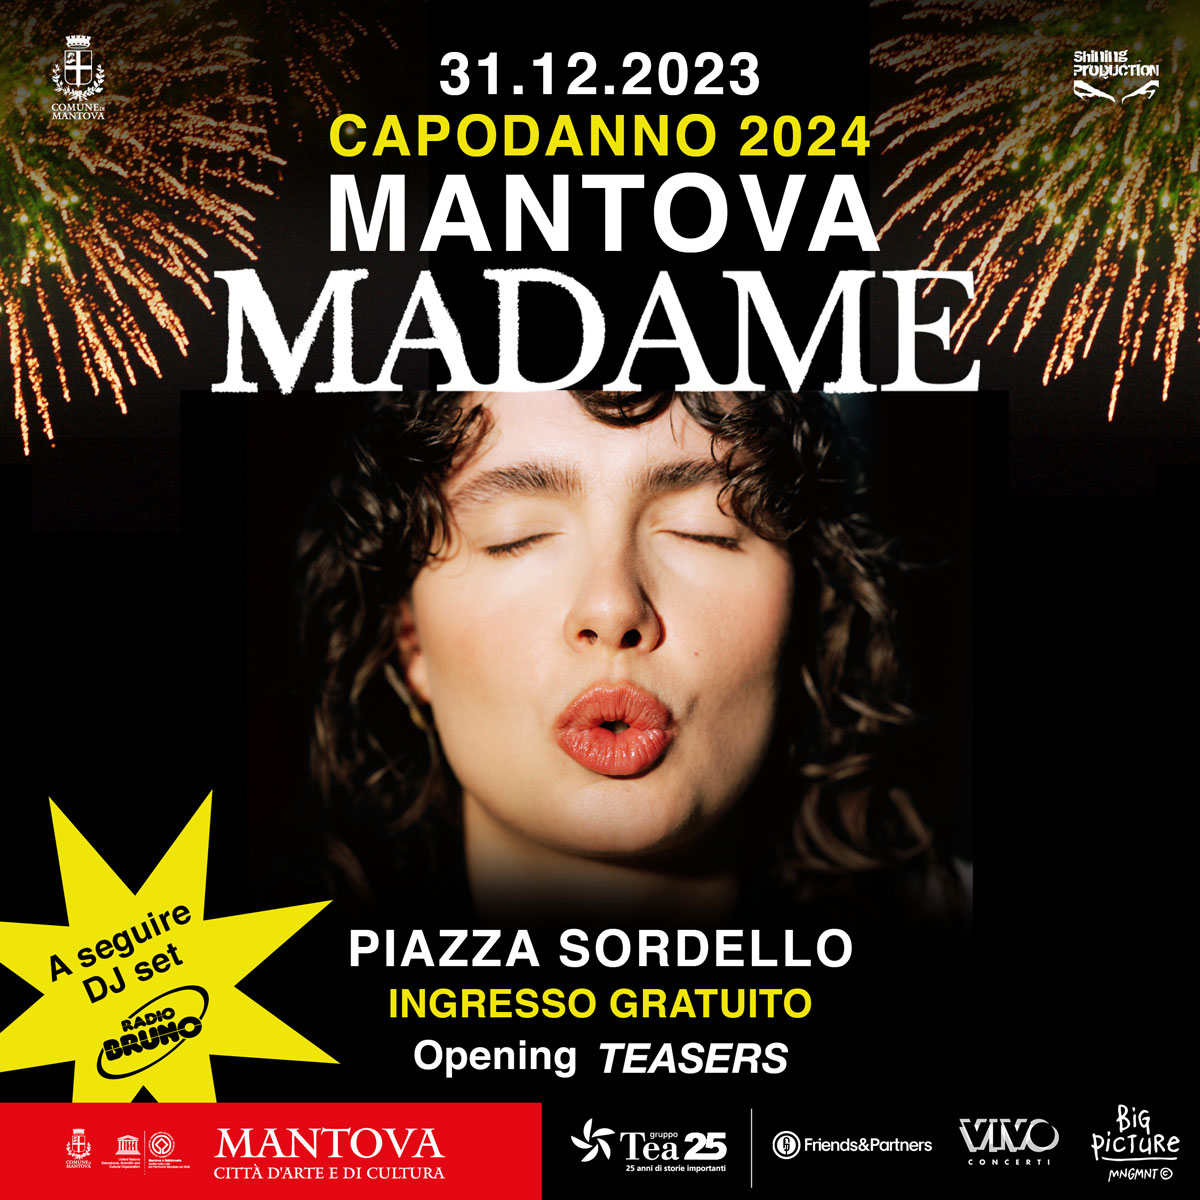 Capodanno a Mantova con Madame e Dj set di Radio Bruno